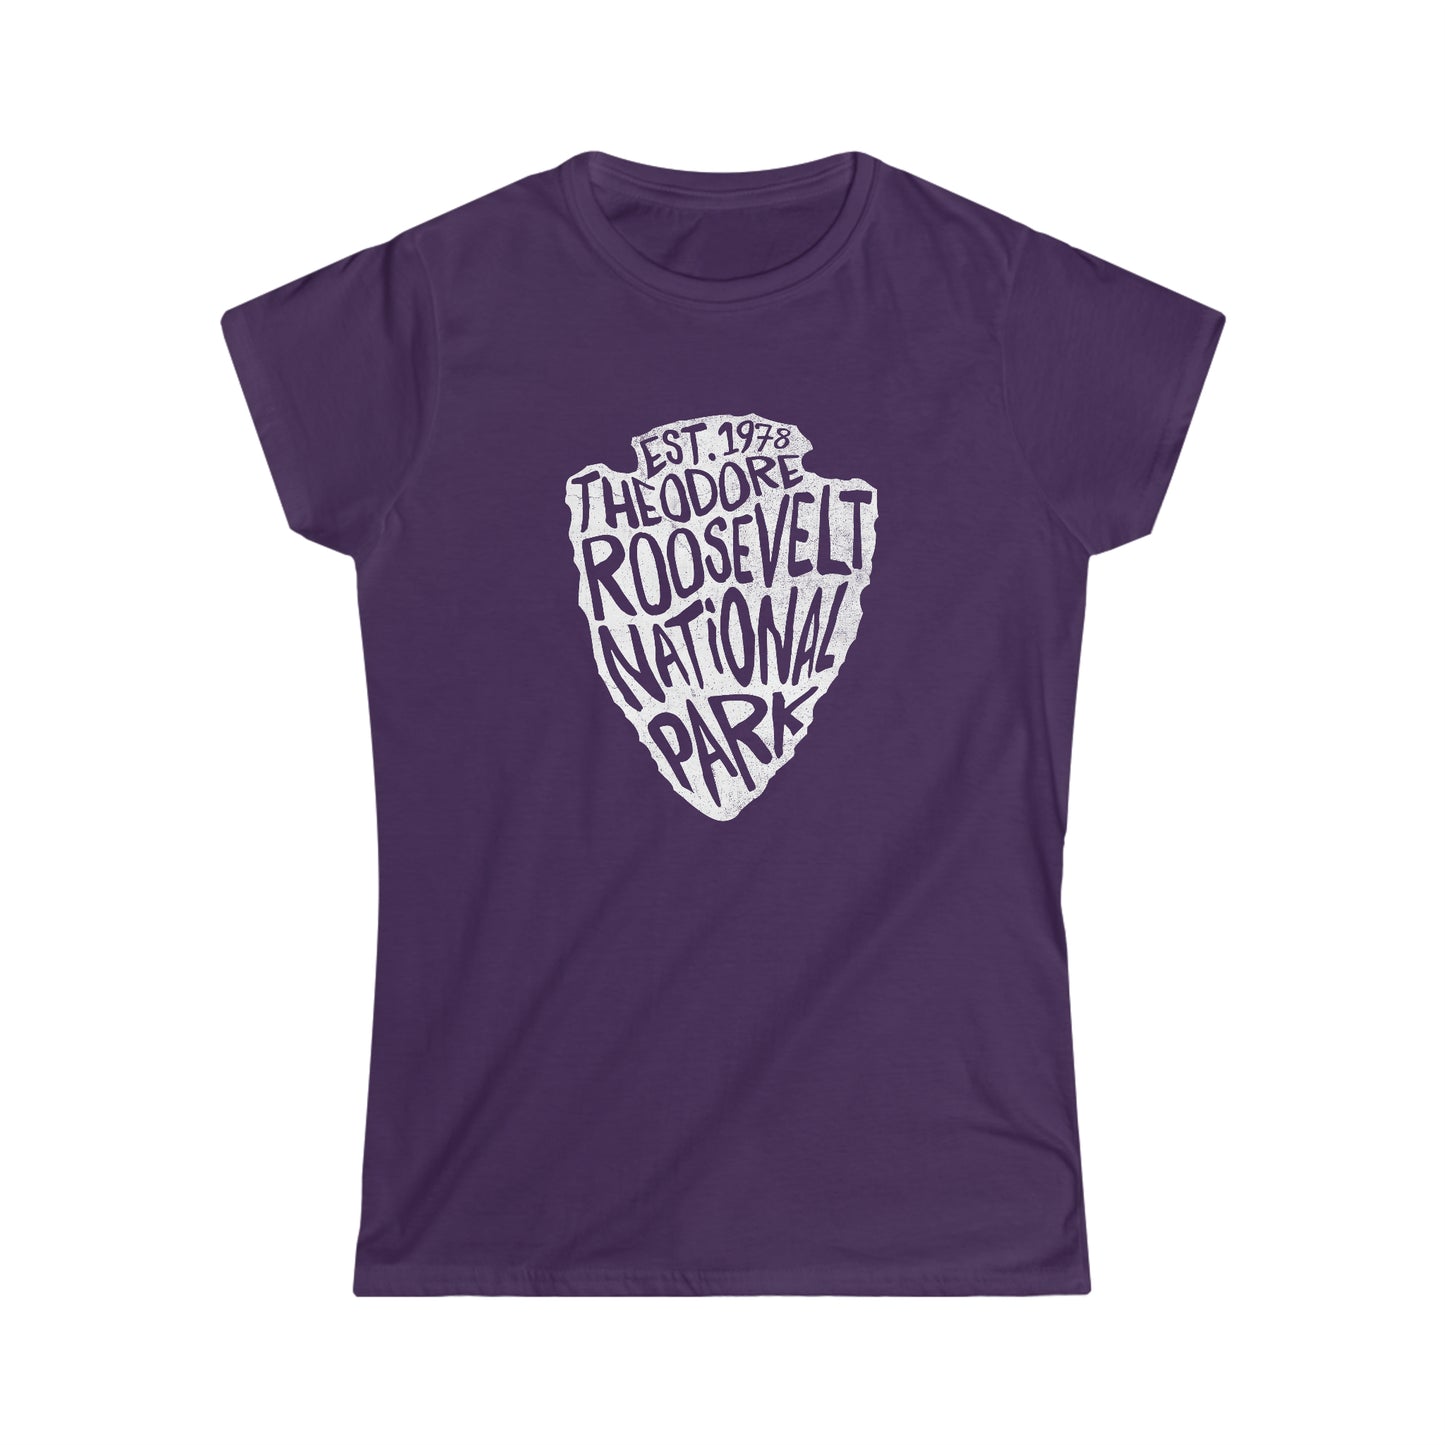 Theodore Roosevelt National Park Women's T-Shirt - Arrowhead Design